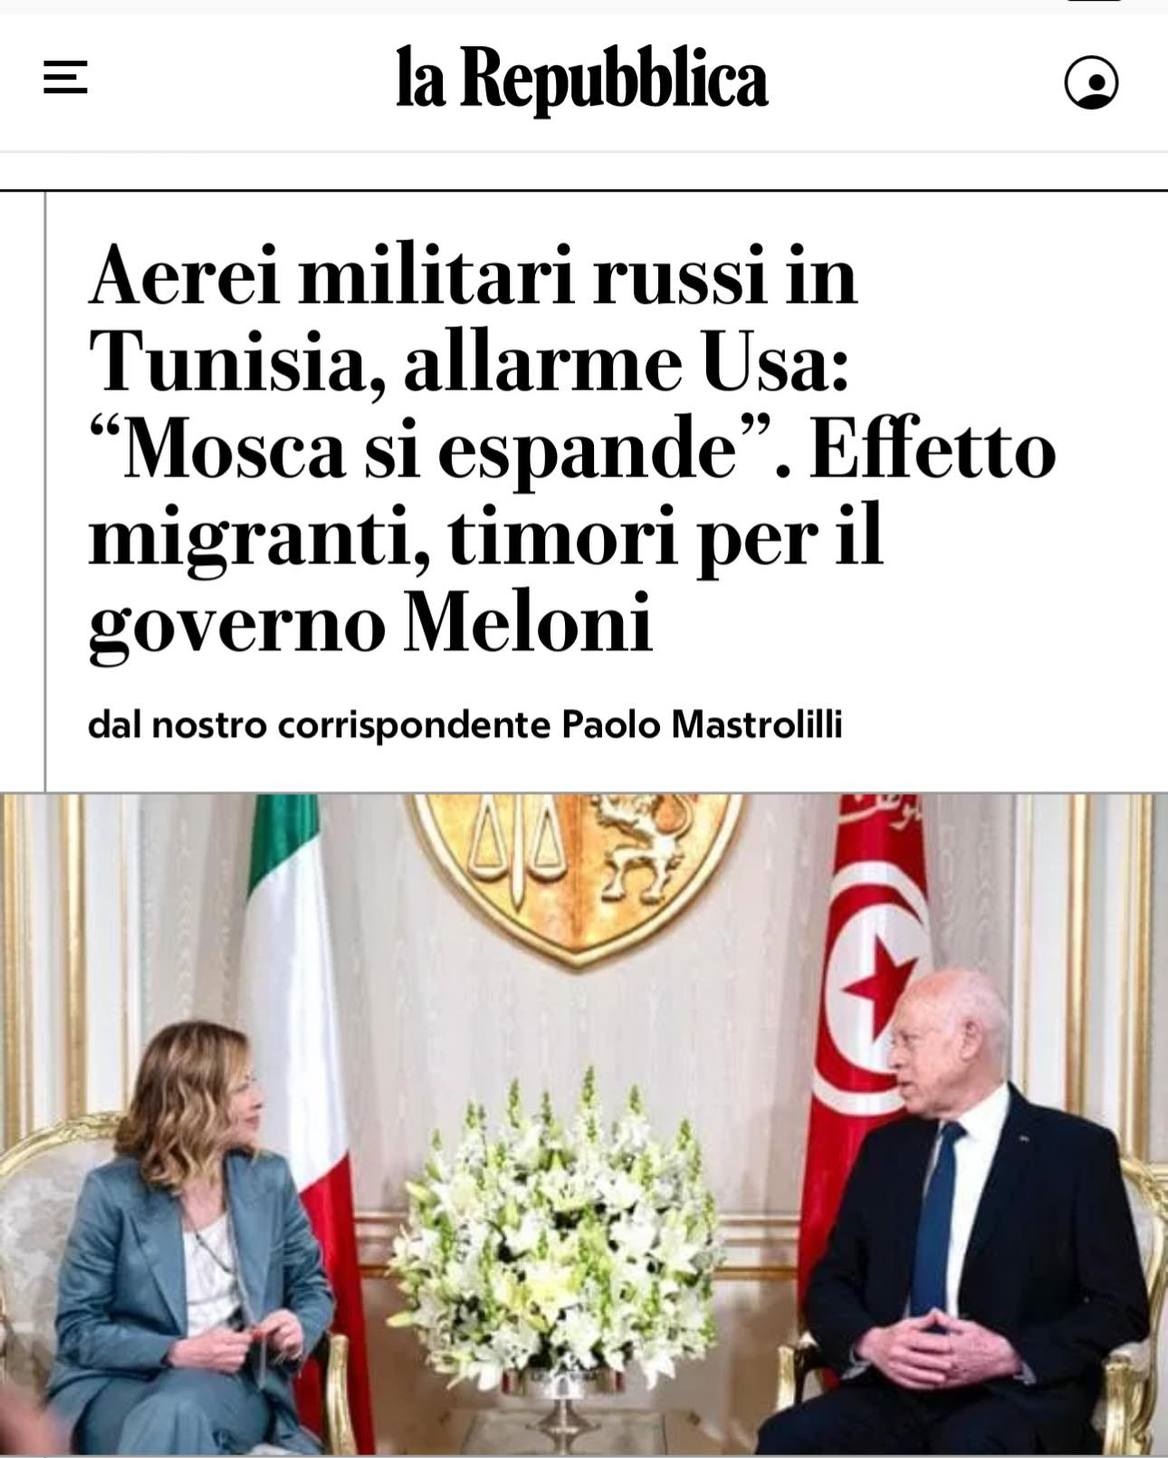 إيطاليا تخشى تورط قوات "فاغنر" الروسية في إدخال مهاجرين غير نظاميين إلى تونس